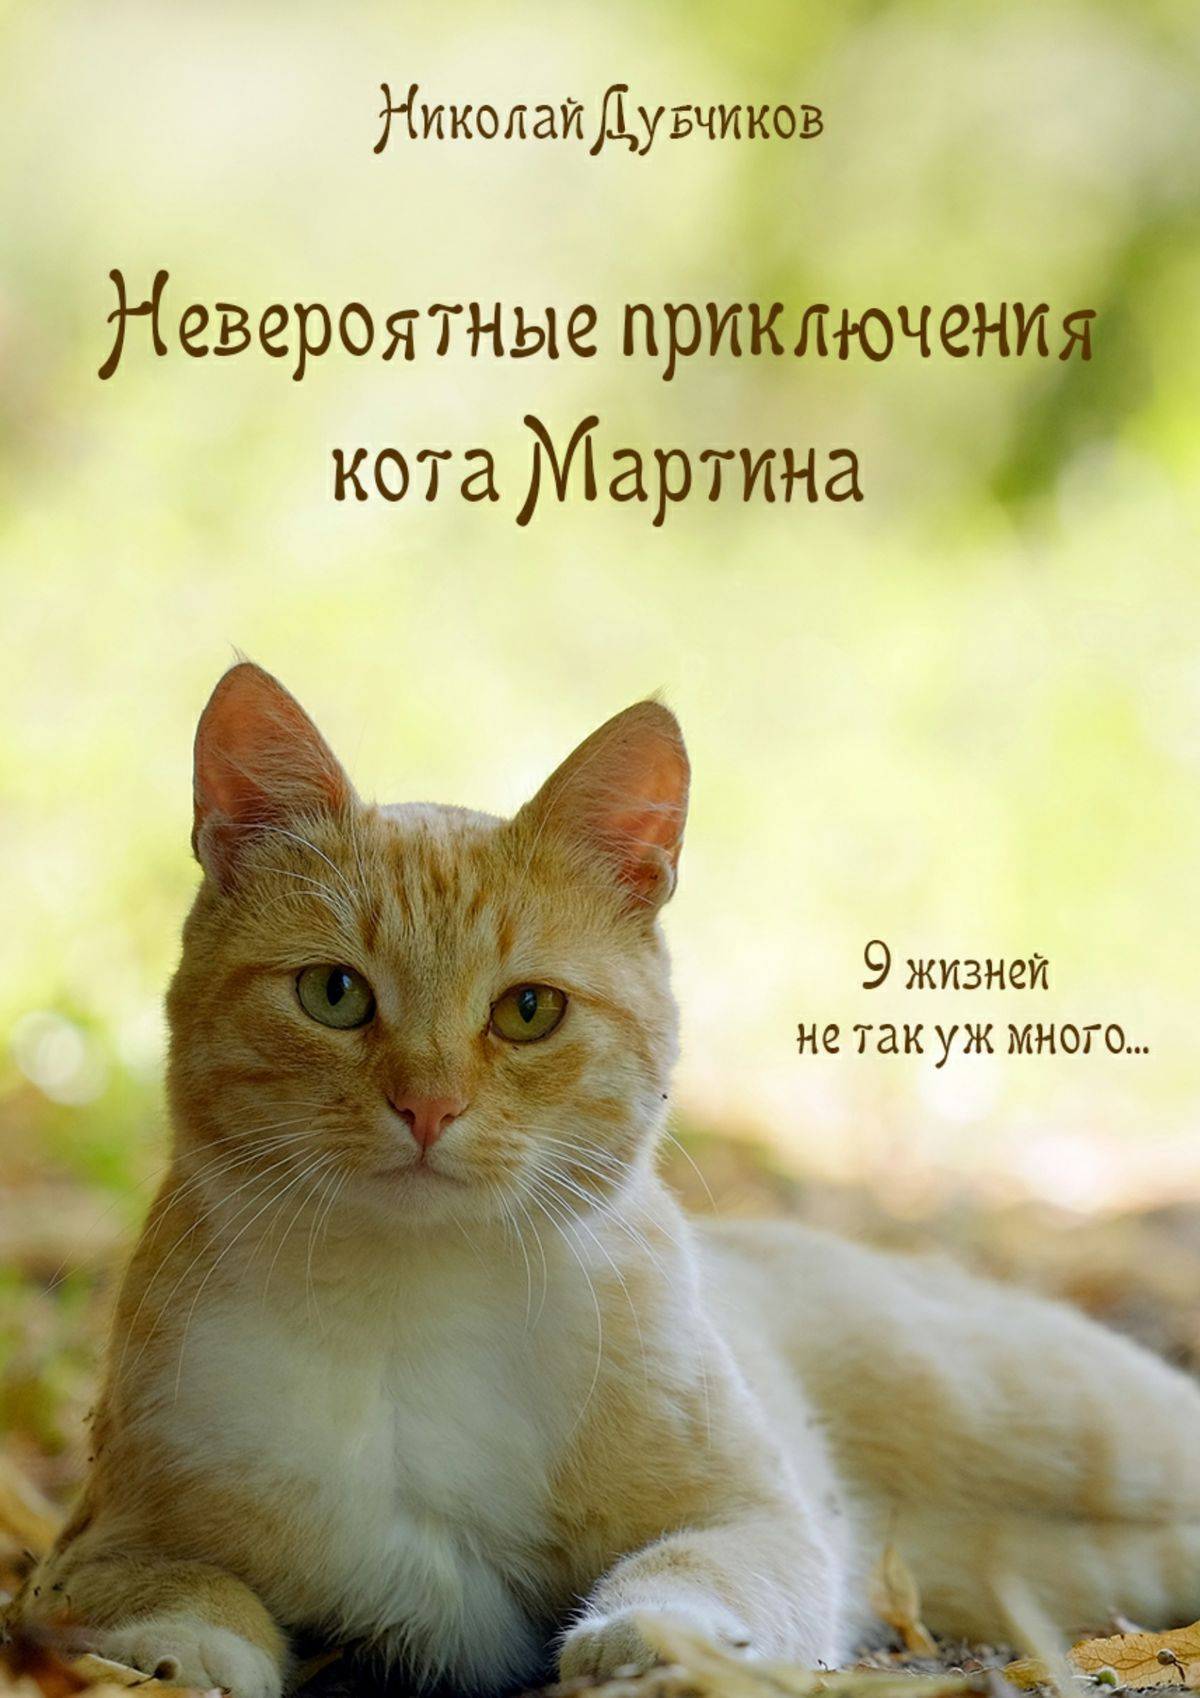 Книга невероятное приключения. Невероятные приключения кота. Кошачьи приключения. Приключения рыжего кота.